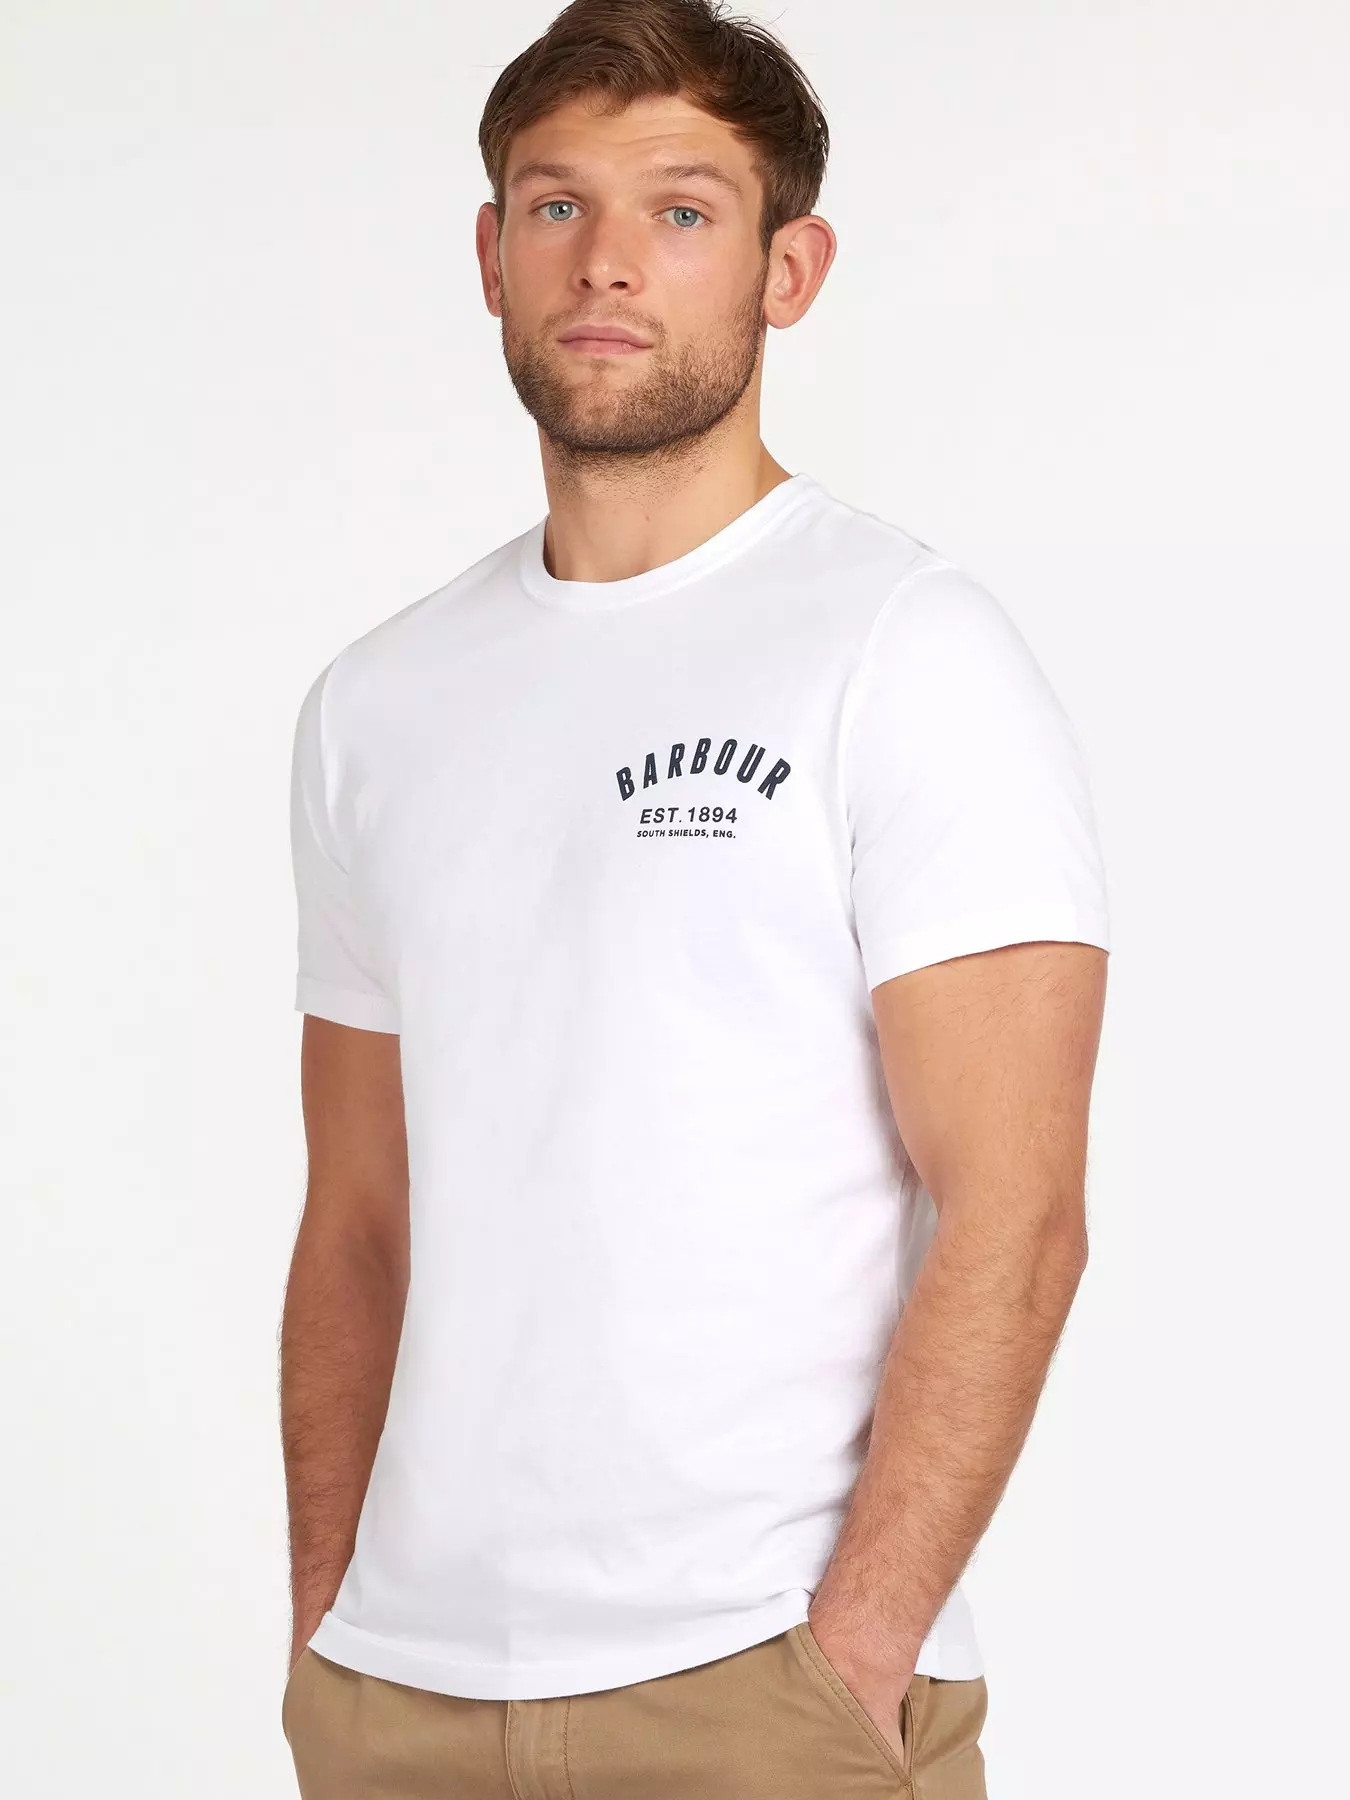 Vans Men's Left Chest Logo T-Shirt - White/Black